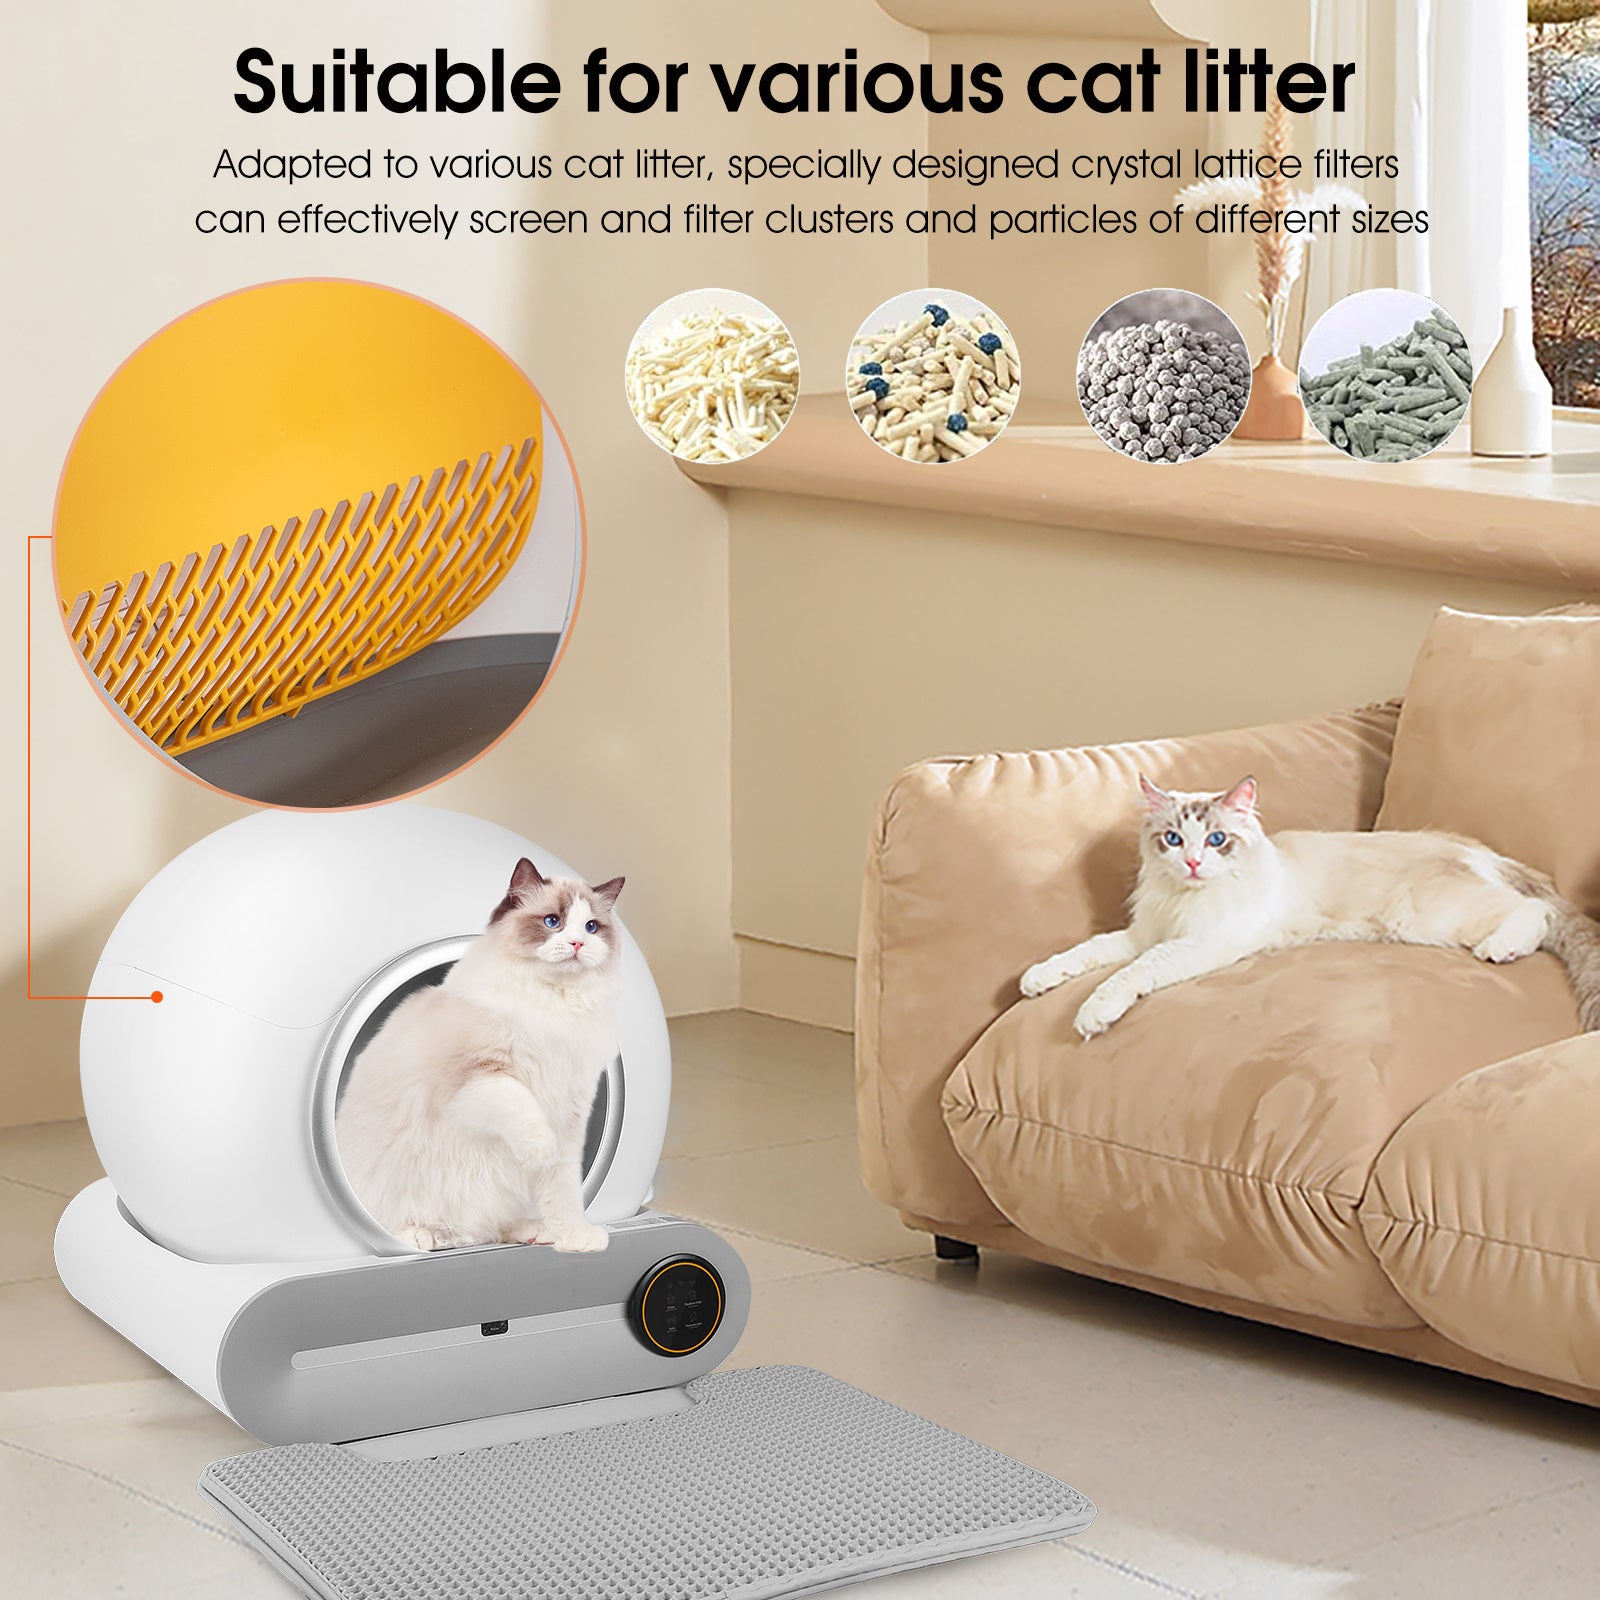 Clean Cat 10 sacchetti x lettiera  Thaler Shop - Marka - Igiene e be, 1,89  €